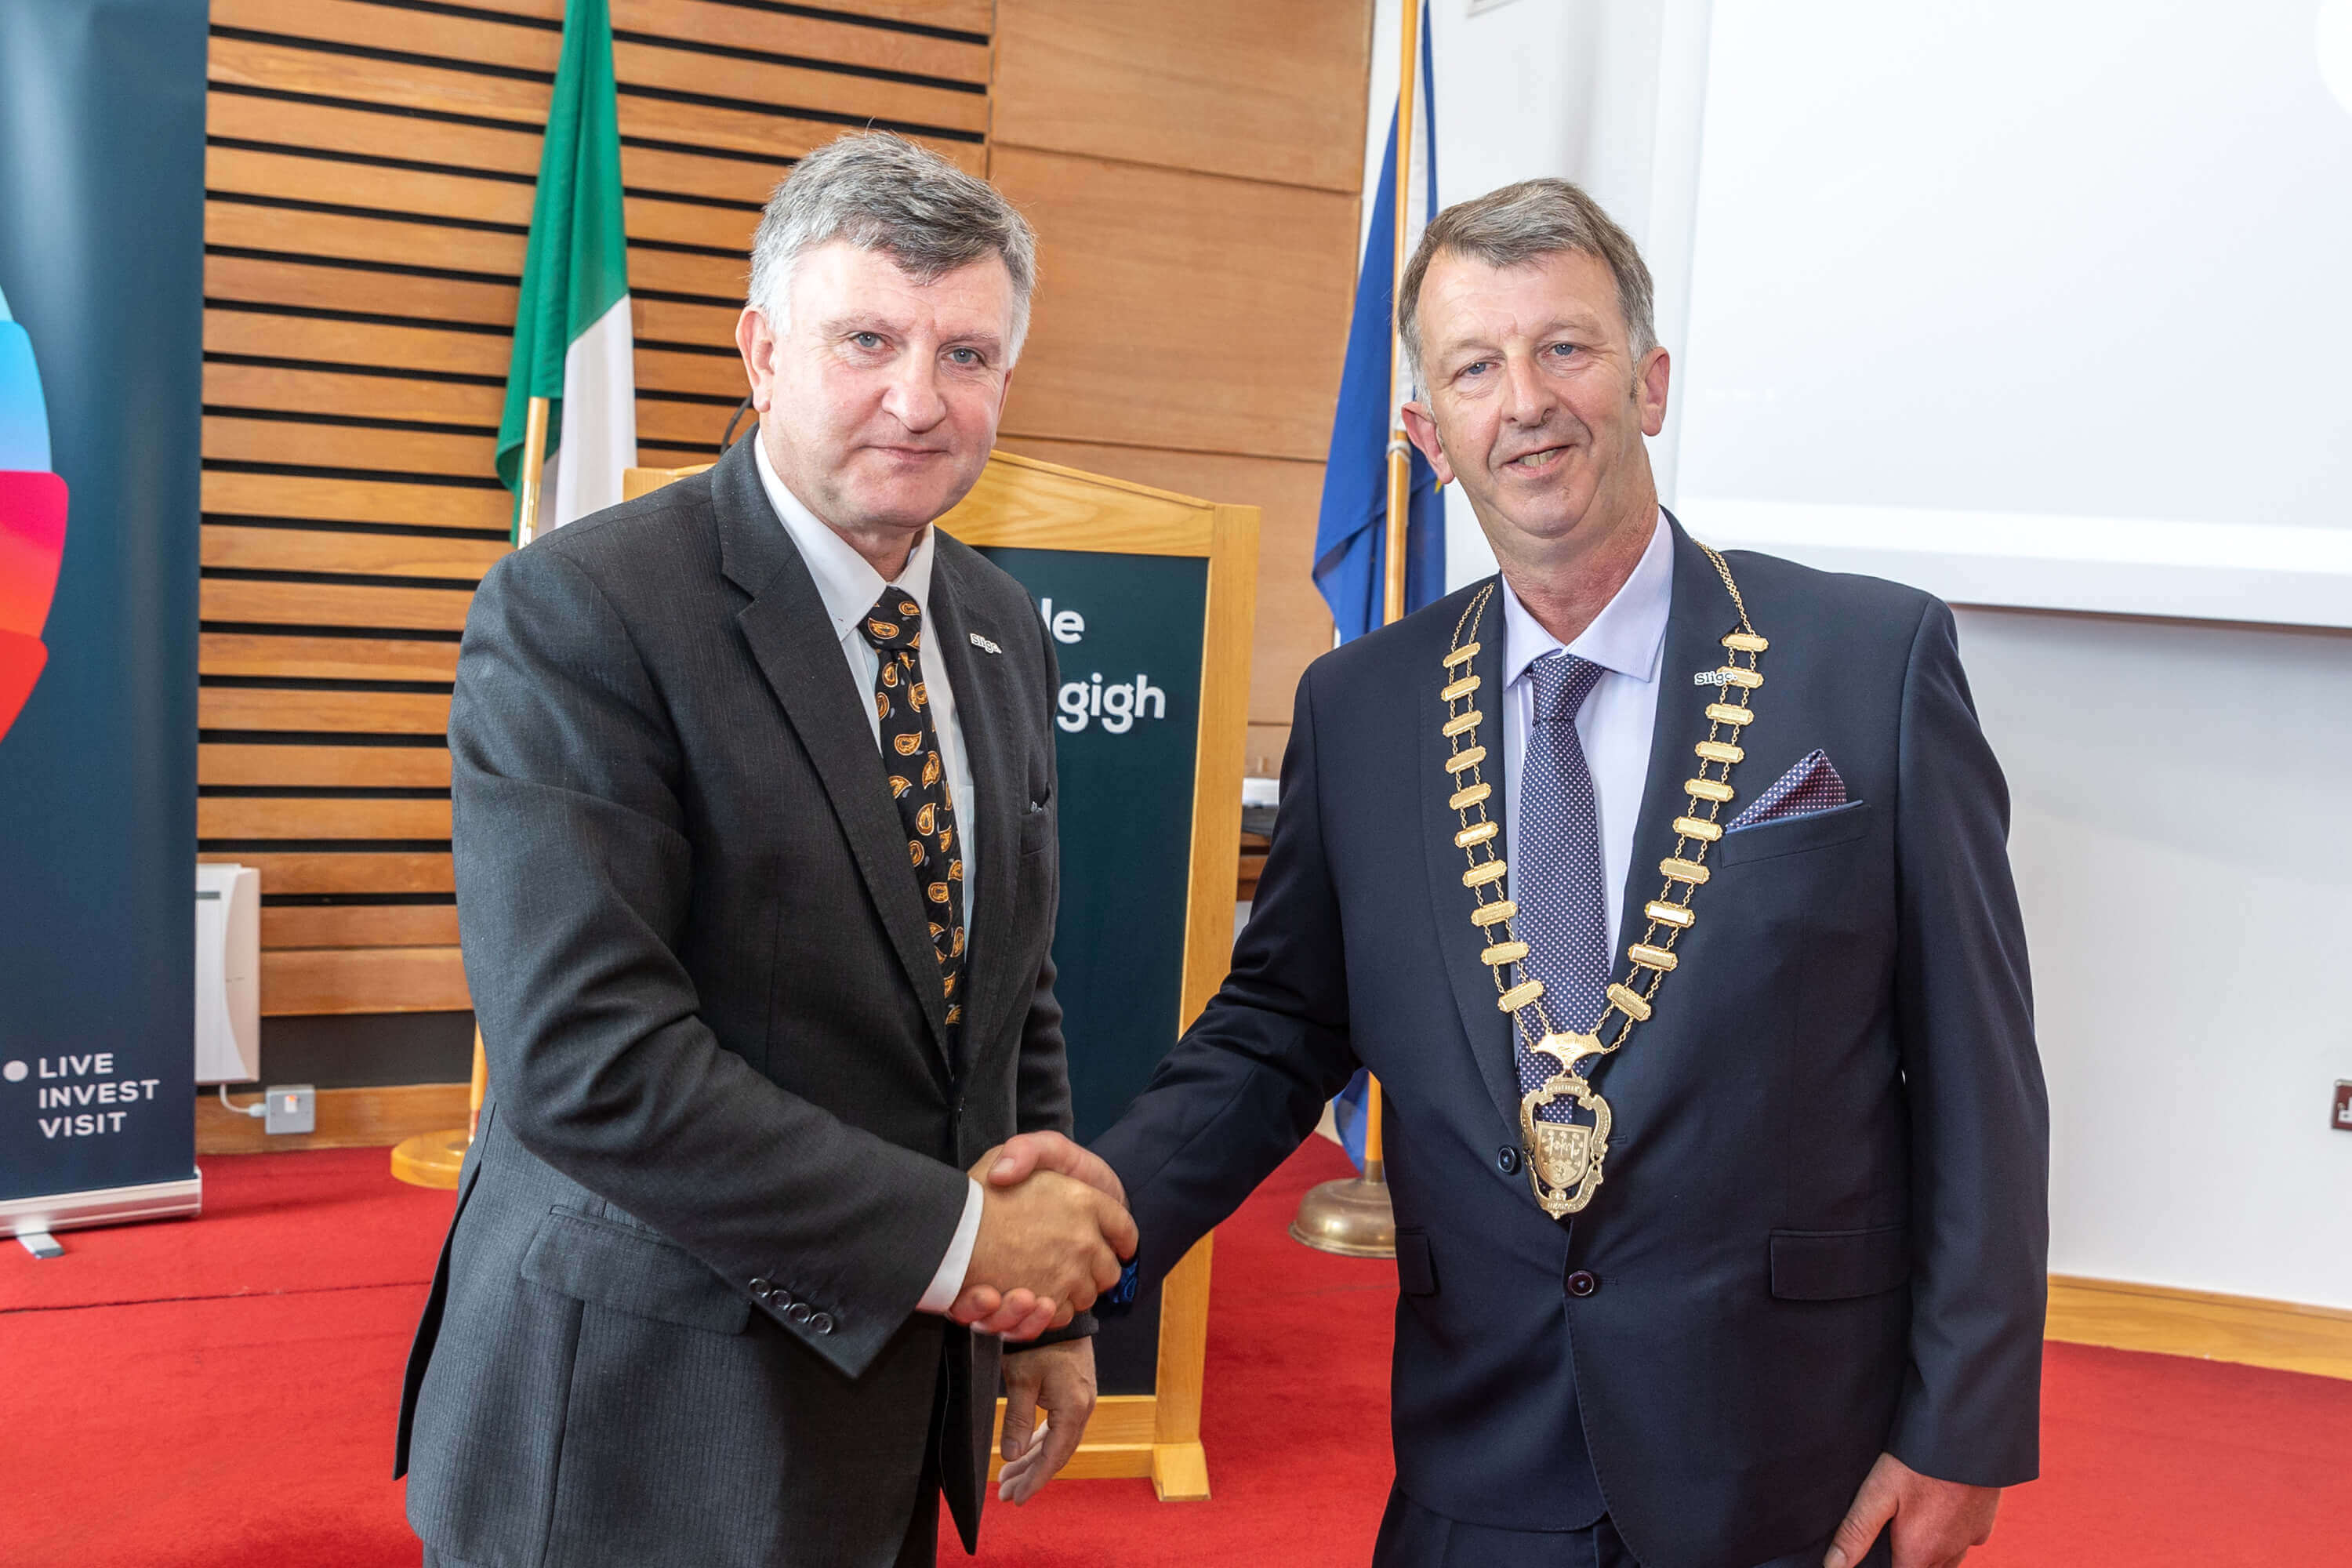 Councillor Gerard Mullaney Elected Cathaoirleach of Sligo County Council 